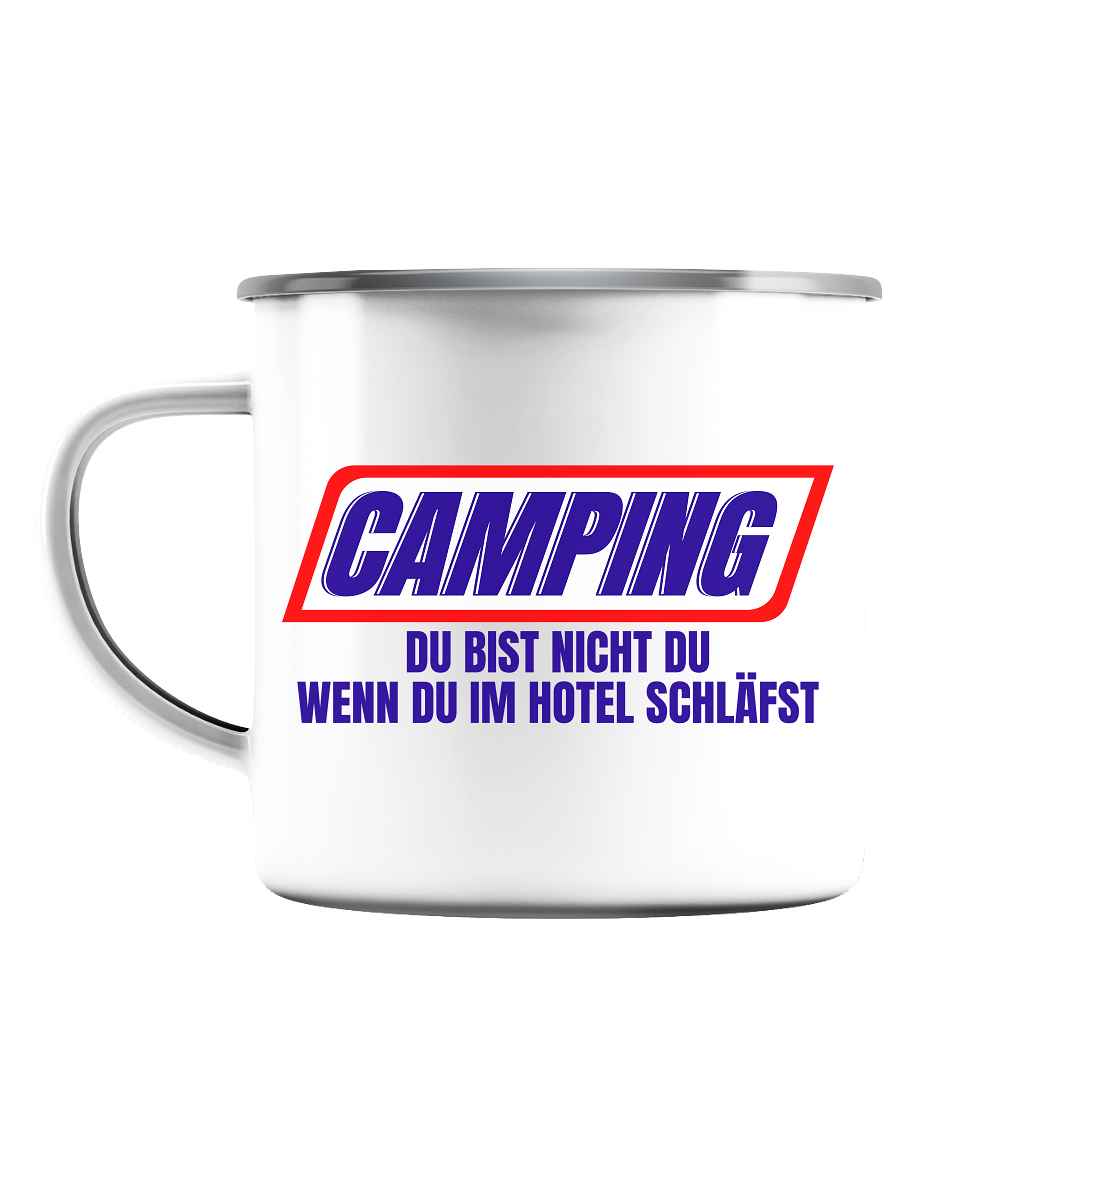 Camping - du bist nicht du, wenn du im Hotel schläfst! - Emaille Tasse (Silber)